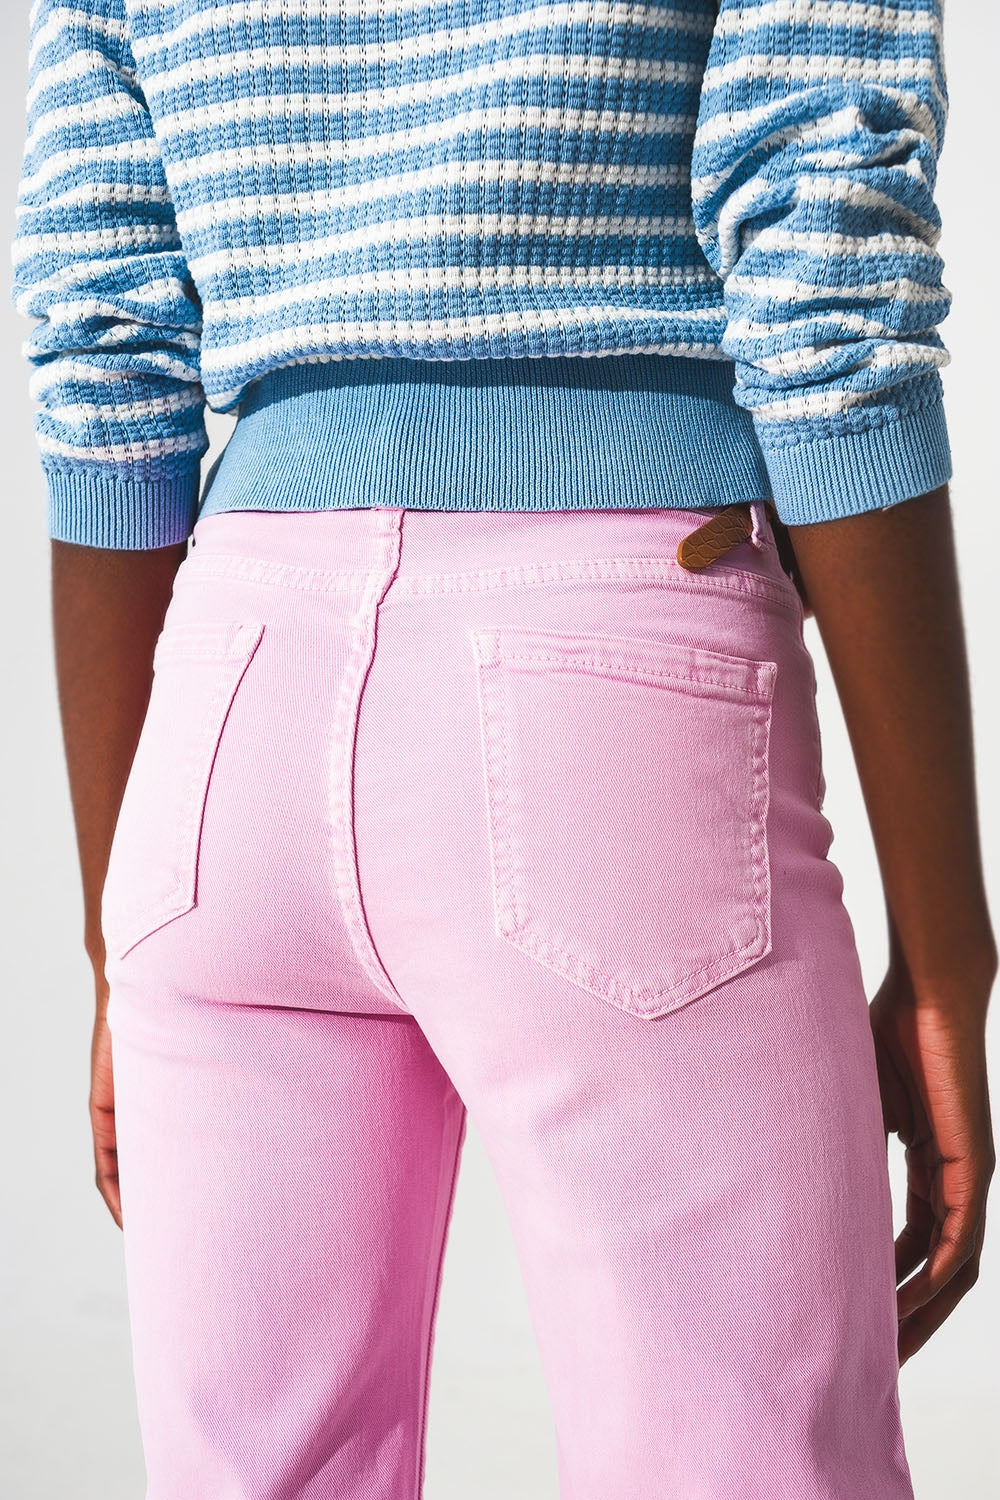 Cropped wide leg jeans in bubblegum pink - Szua Store